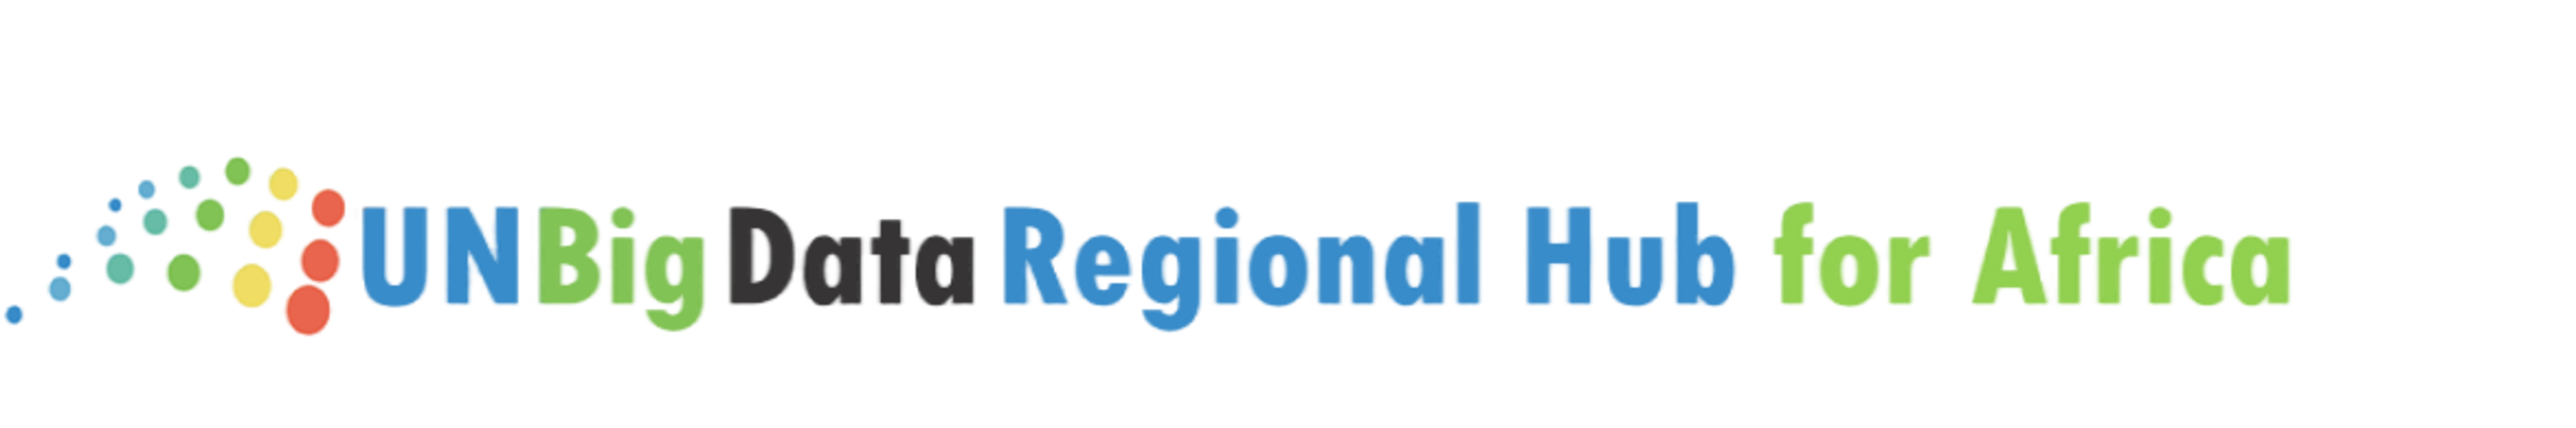 UN | Regional Hub for Africa